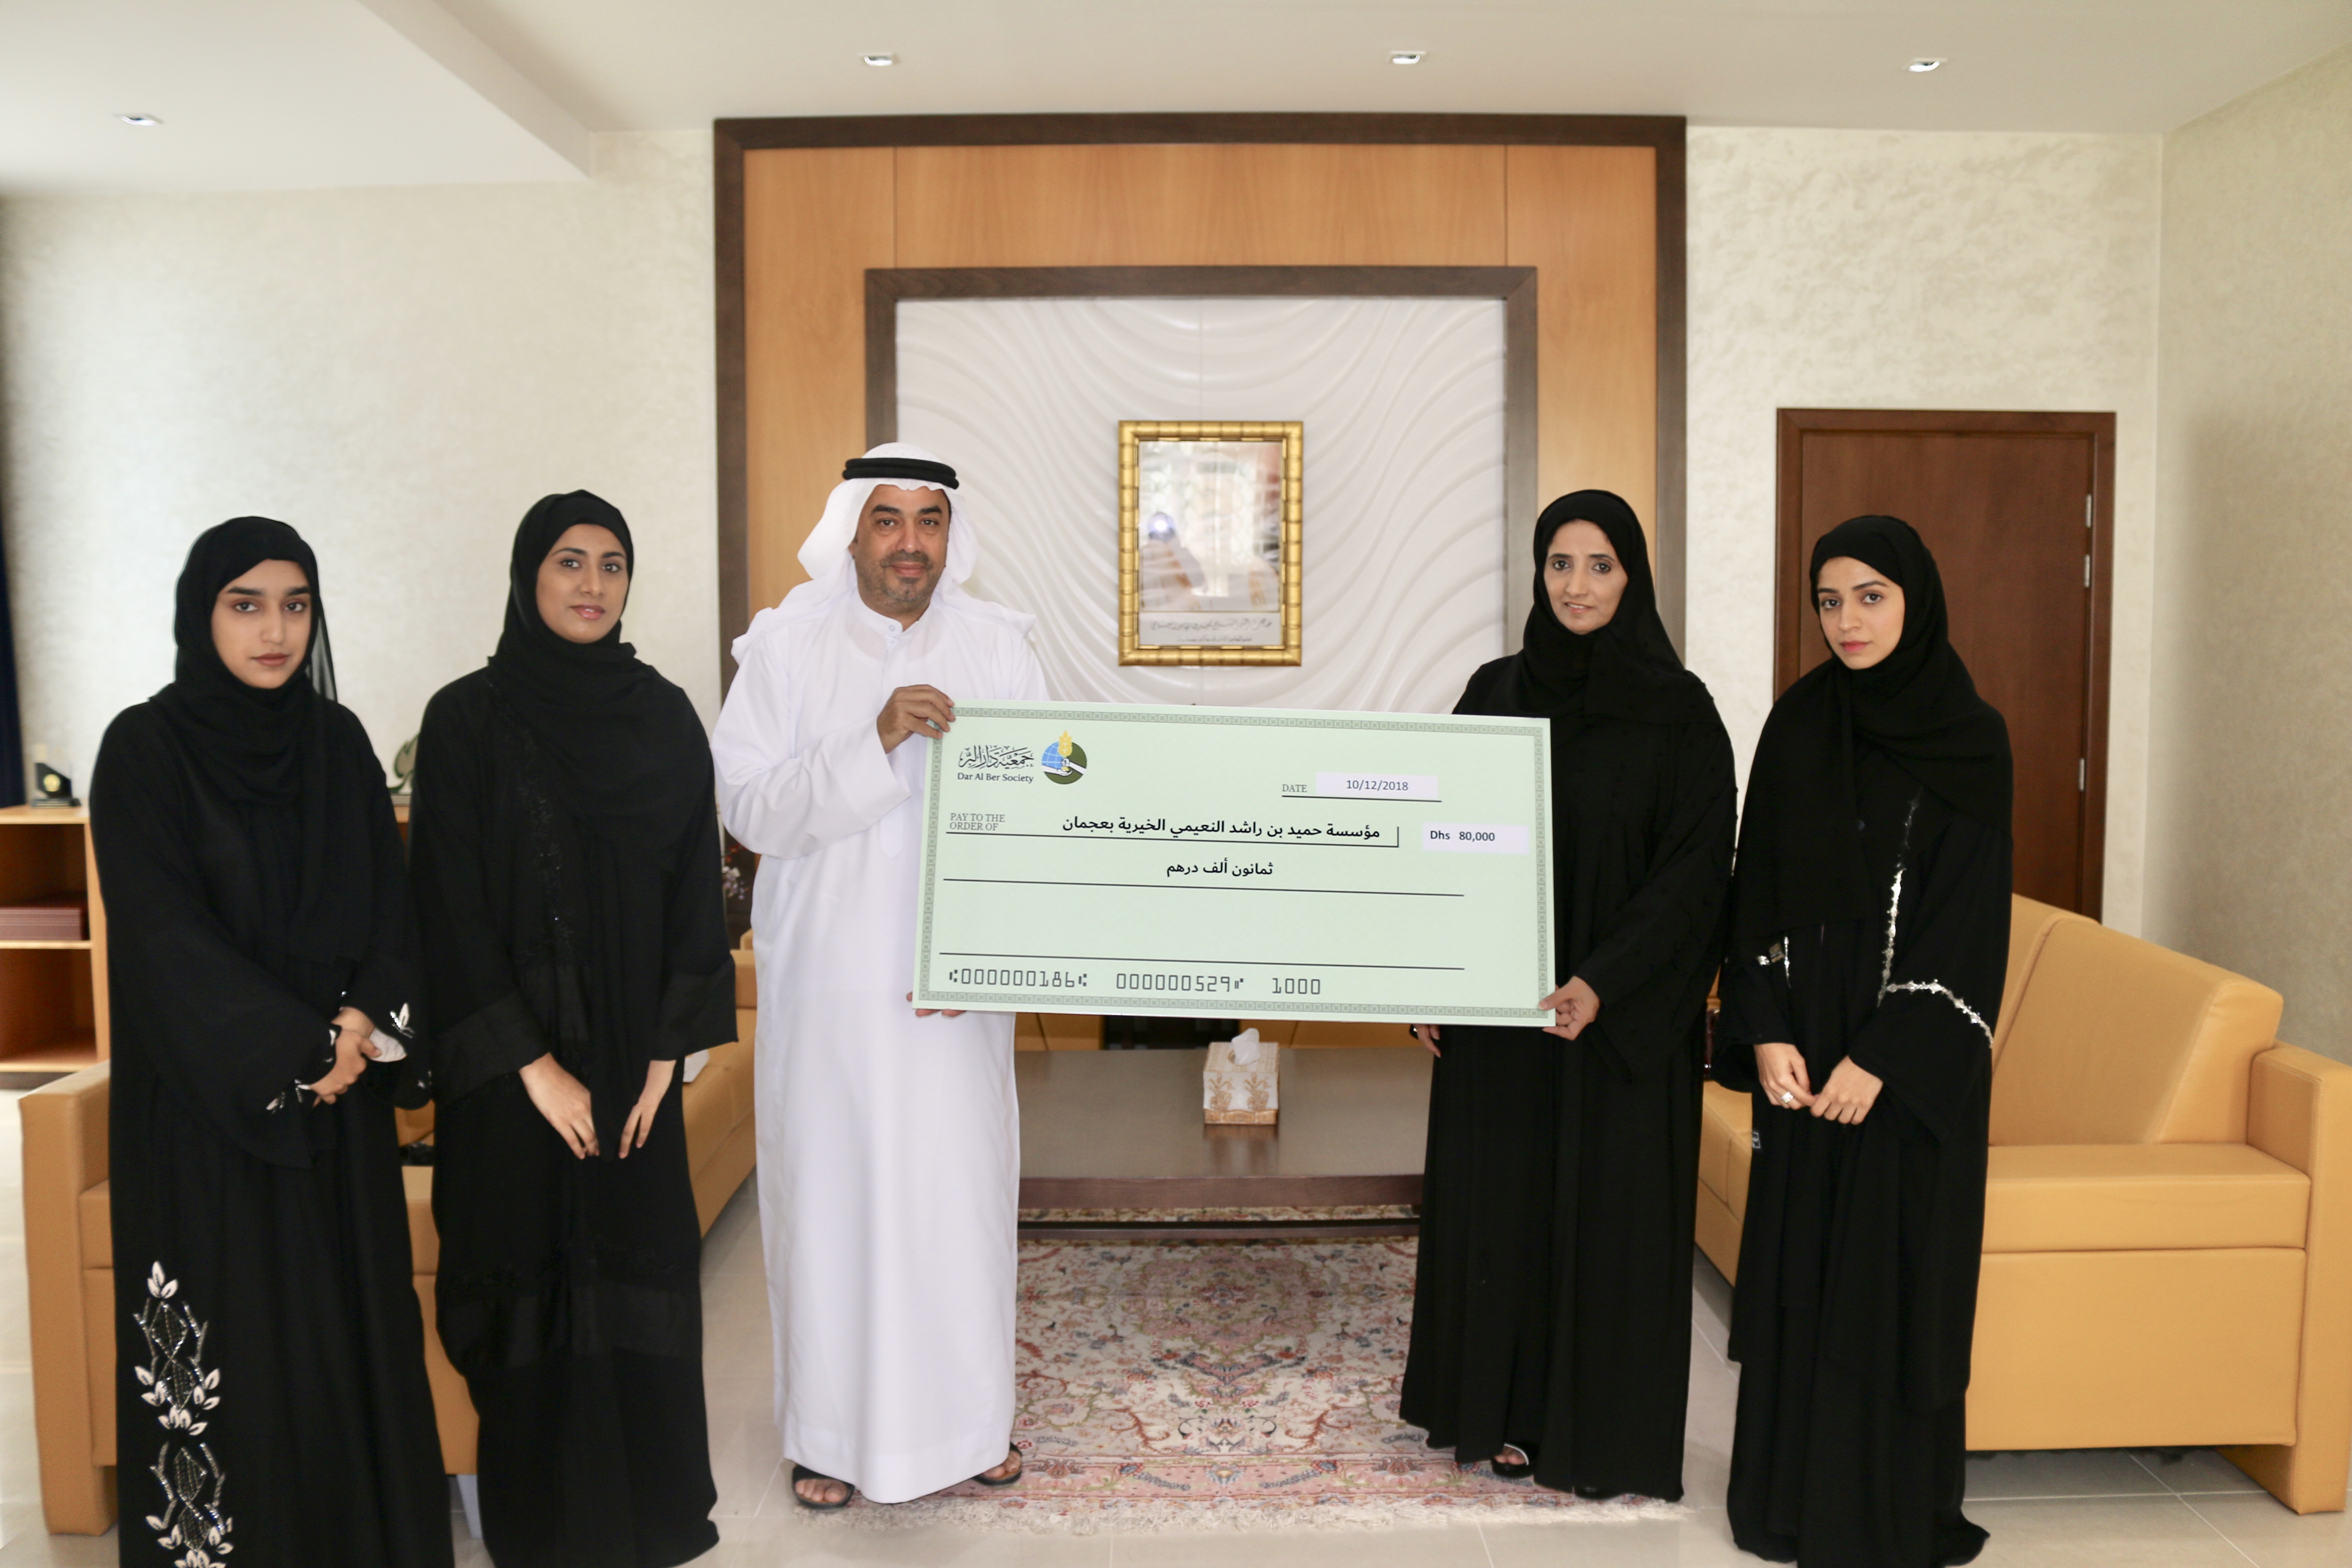 لجنة الأسر المتعففة تقدم  80 ألف درهم لقطاع التعليم لمؤسسة حميد بن راشد النعيمي الخيرية